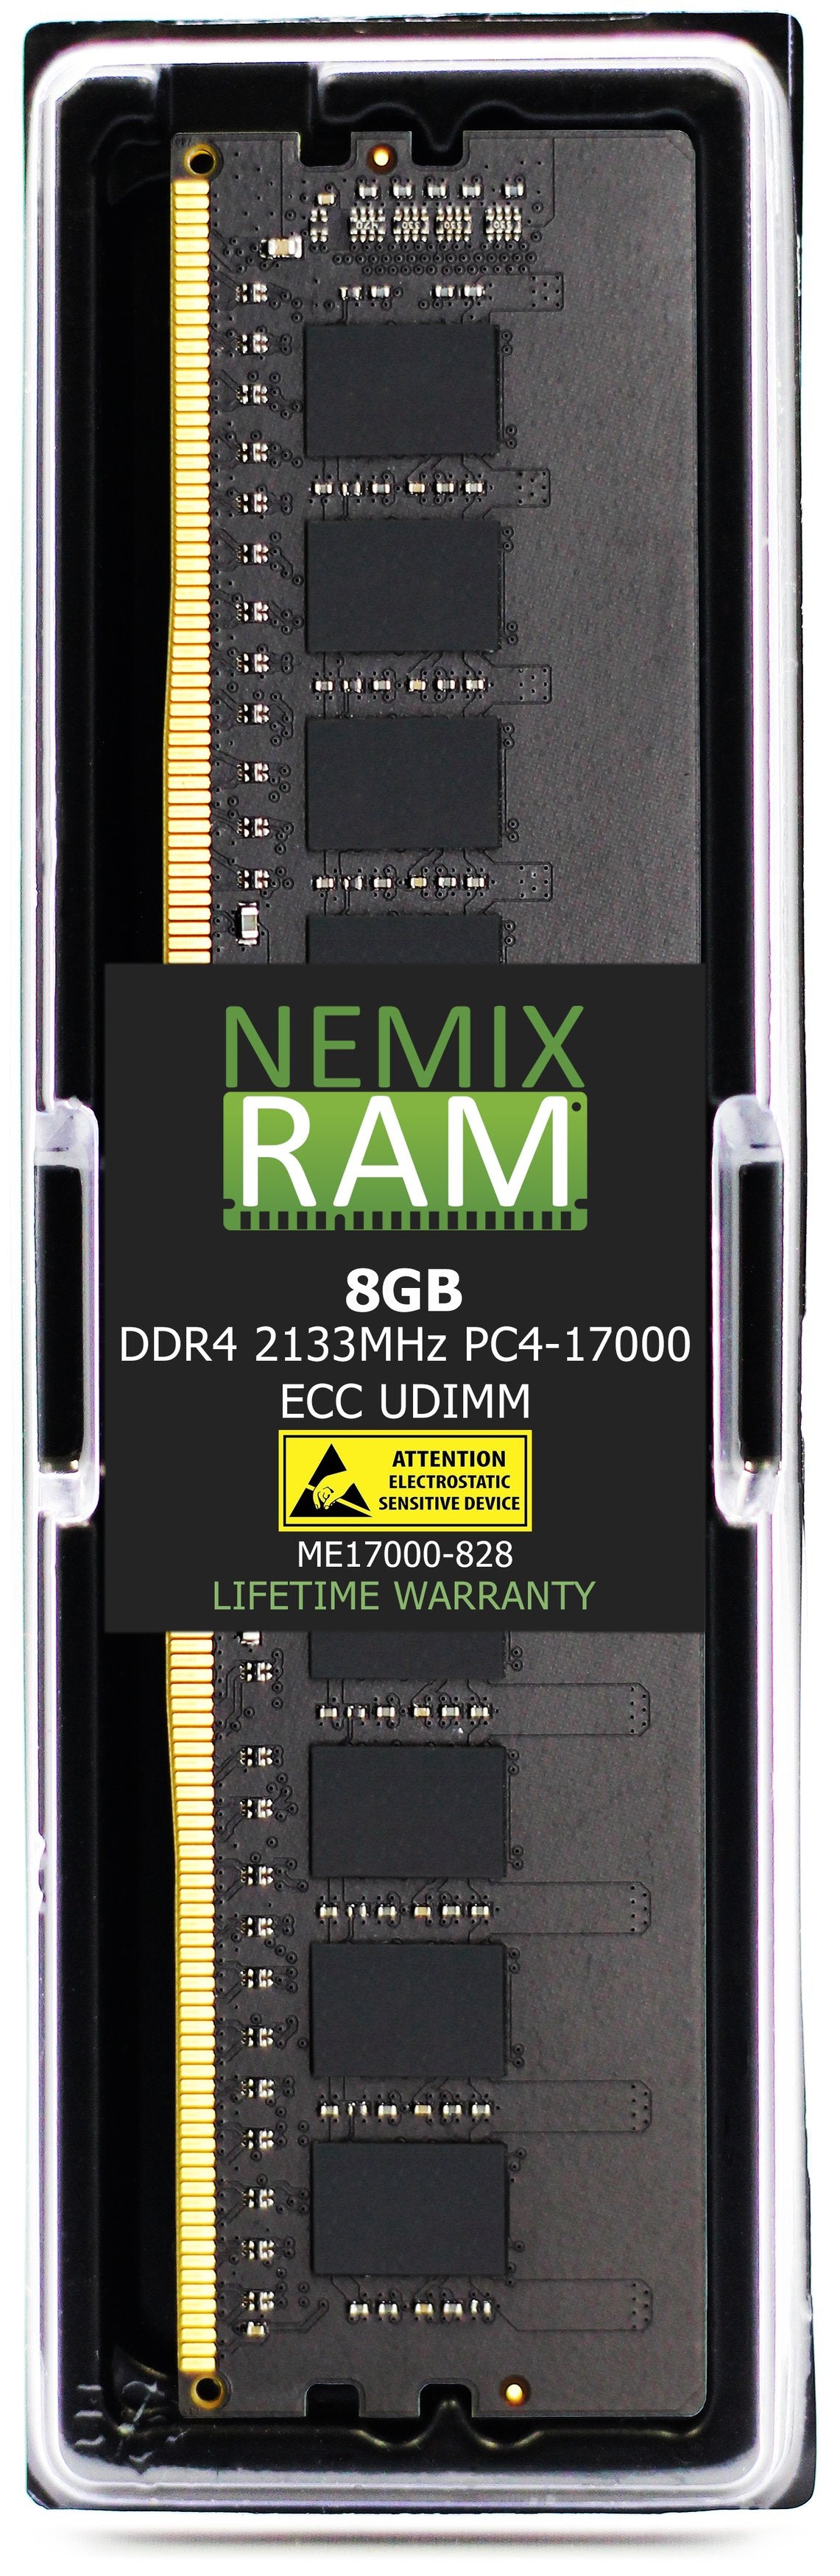 8GB DDR4 2133MHZ PC4-17000 ECC UDIMM Compatible with Supermicro MEM-DR480L-CL02-EU21